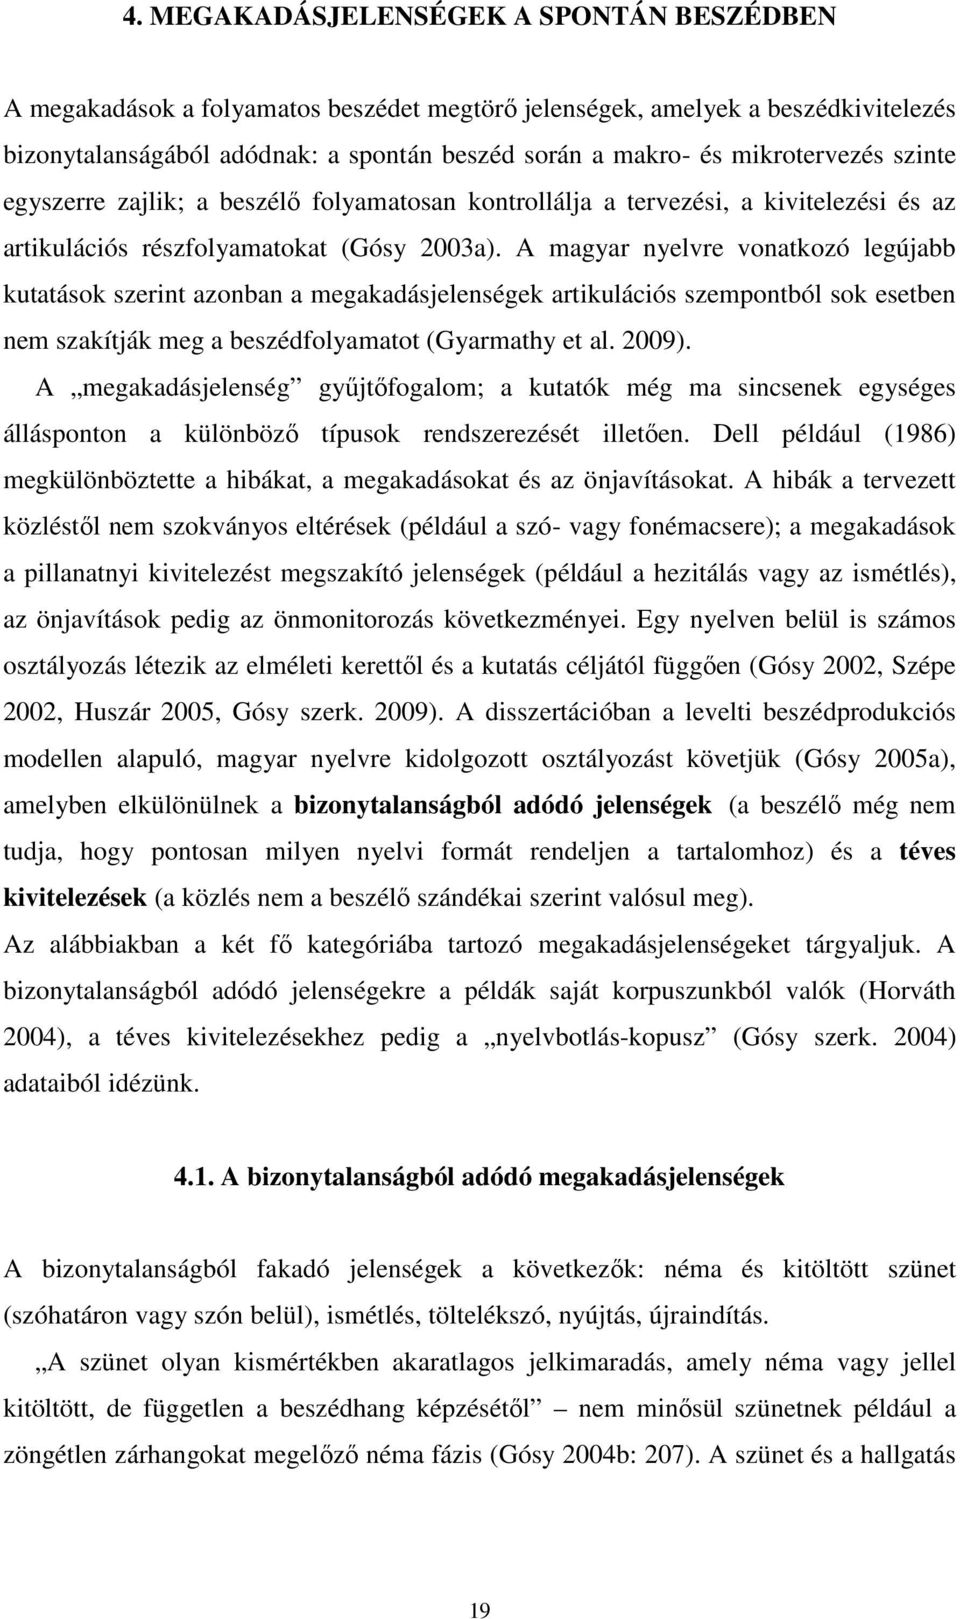 A magyar nyelvre vonatkozó legújabb kutatások szerint azonban a megakadásjelenségek artikulációs szempontból sok esetben nem szakítják meg a beszédfolyamatot (Gyarmathy et al. 2009).